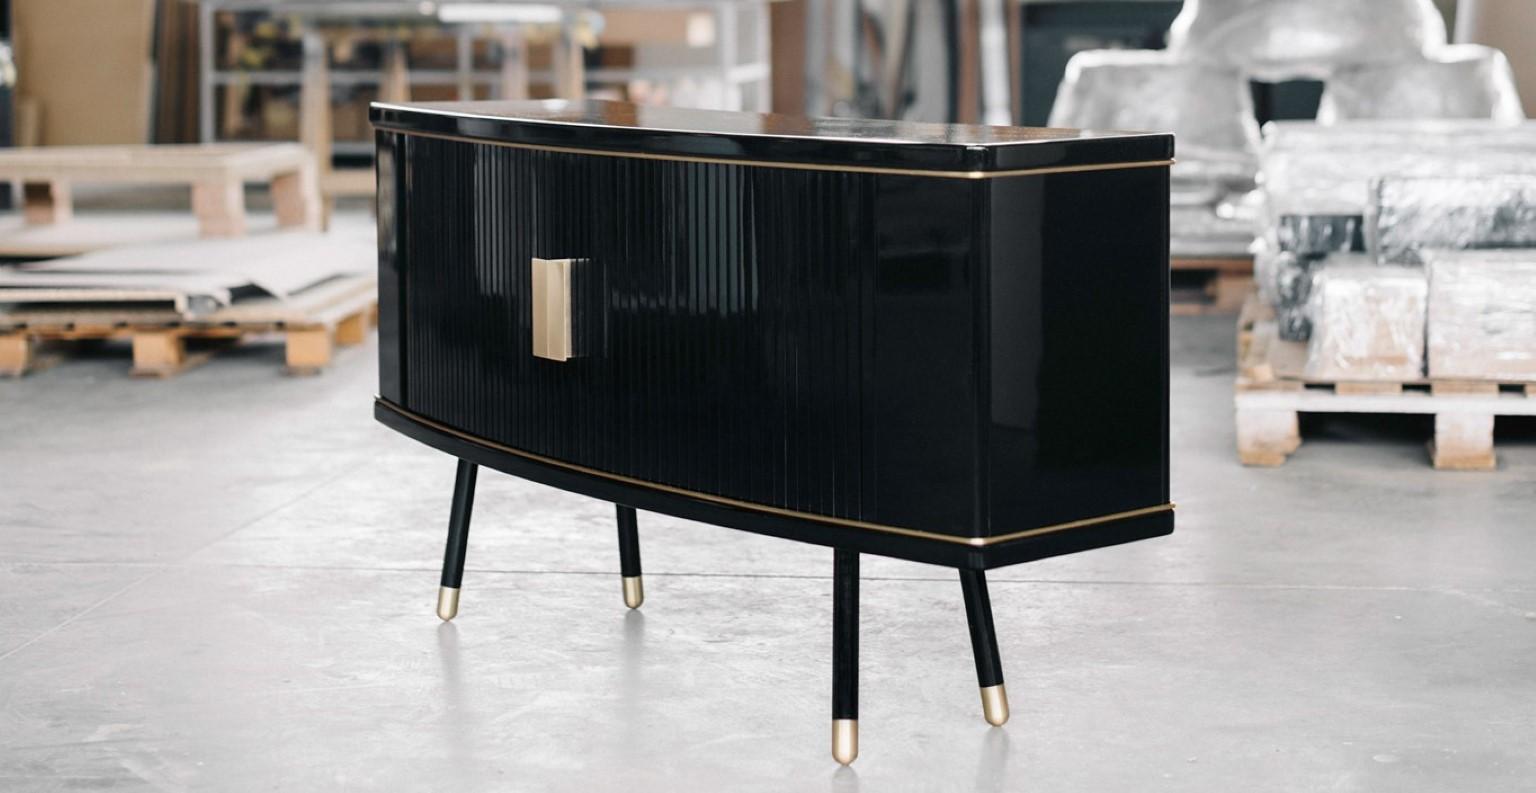 Armoire sur mesure de Magdalena Tekieli
Dimensions : L 150 x D 50 x H 70 cm
Matériaux : Laiton, métal, chêne, finition noir piano brillant.

 